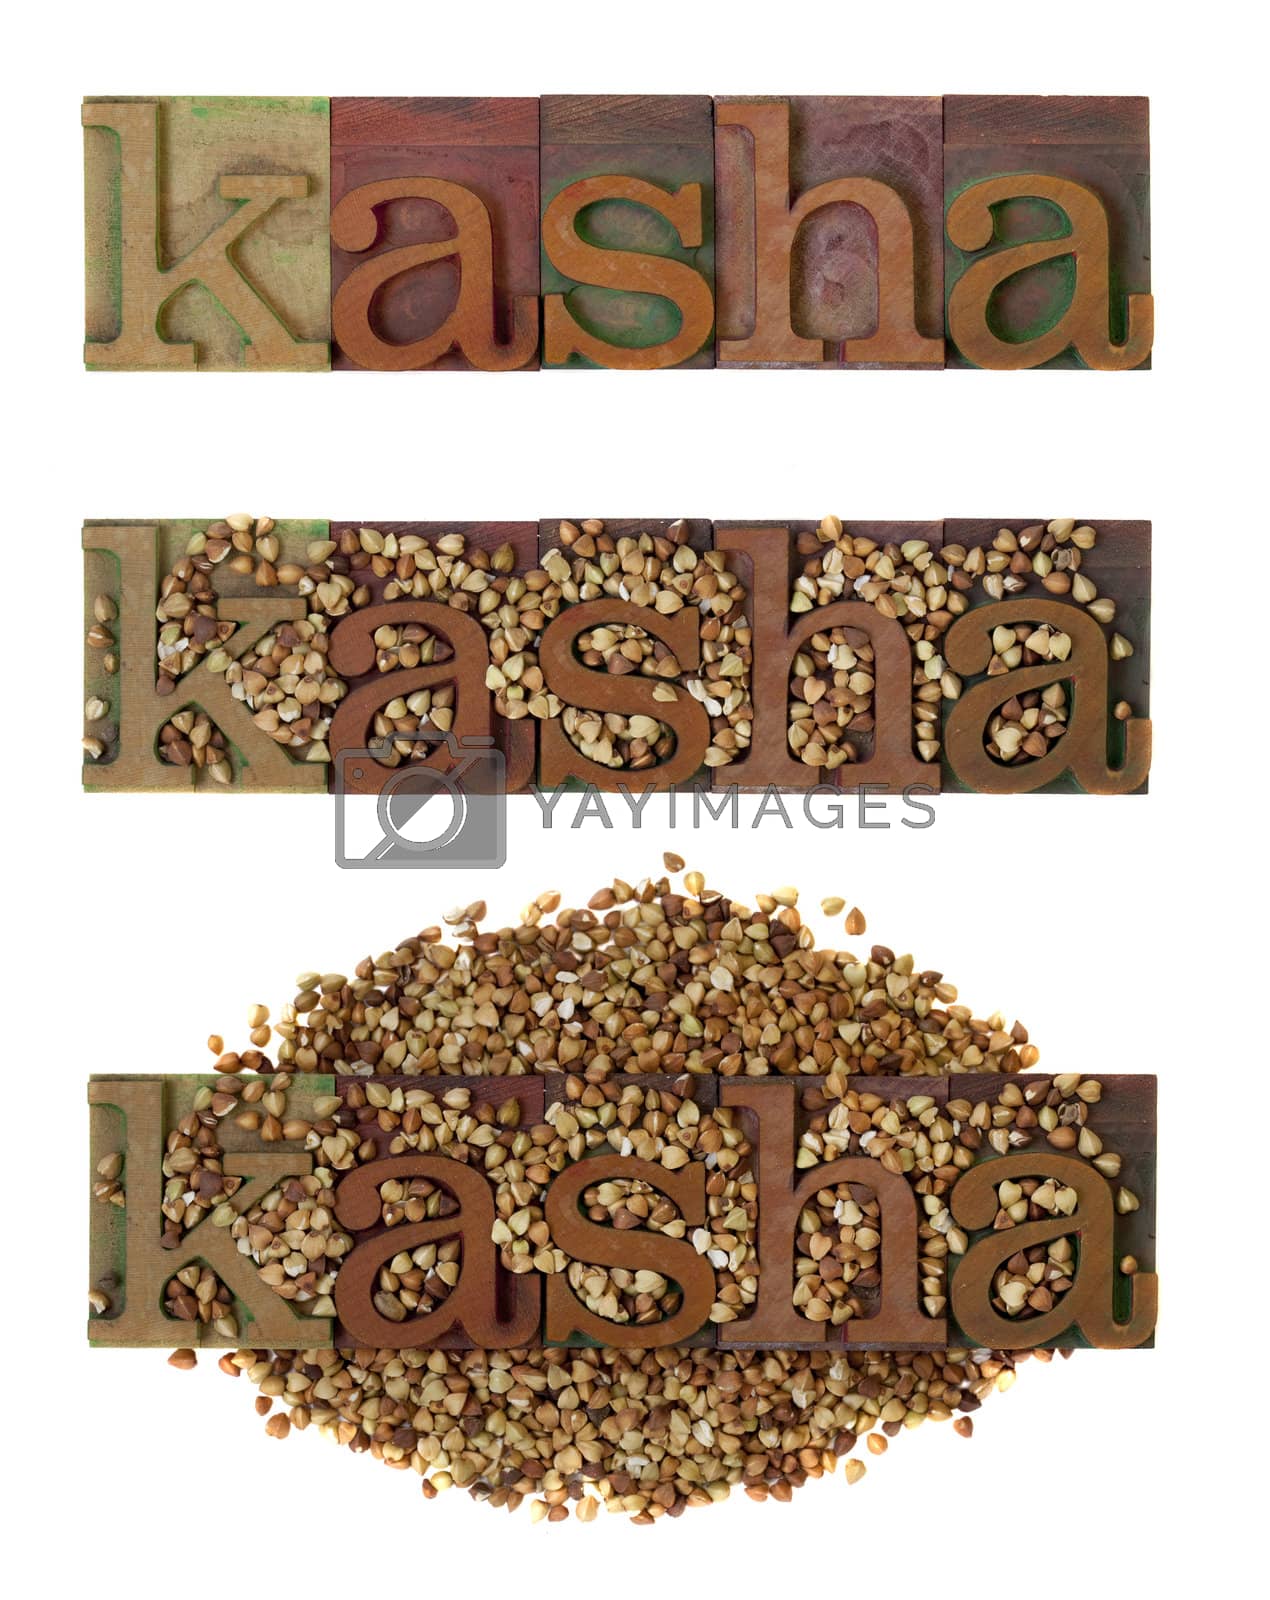 Royalty free image of kasha - roasted buckwheat by PixelsAway